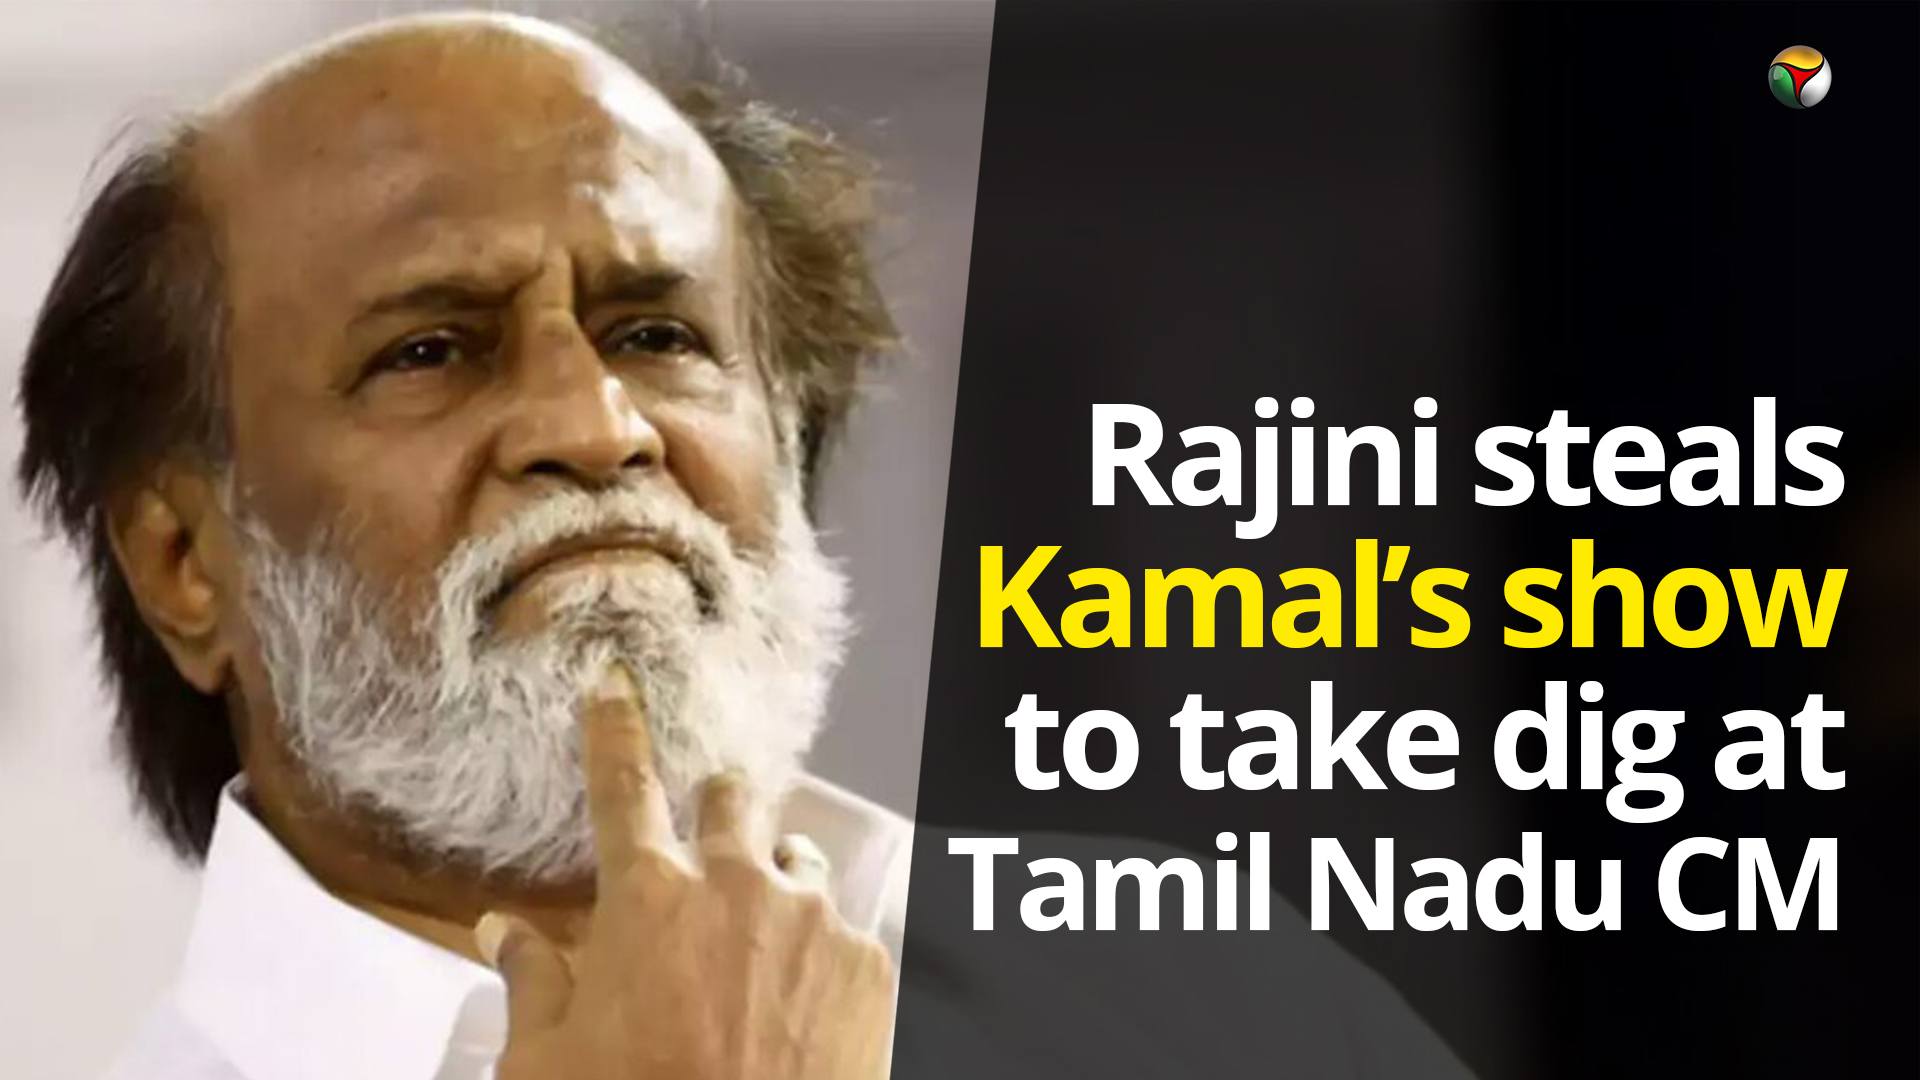 Rajini steals Kamals show to take a dig at Tamil Nadu CM